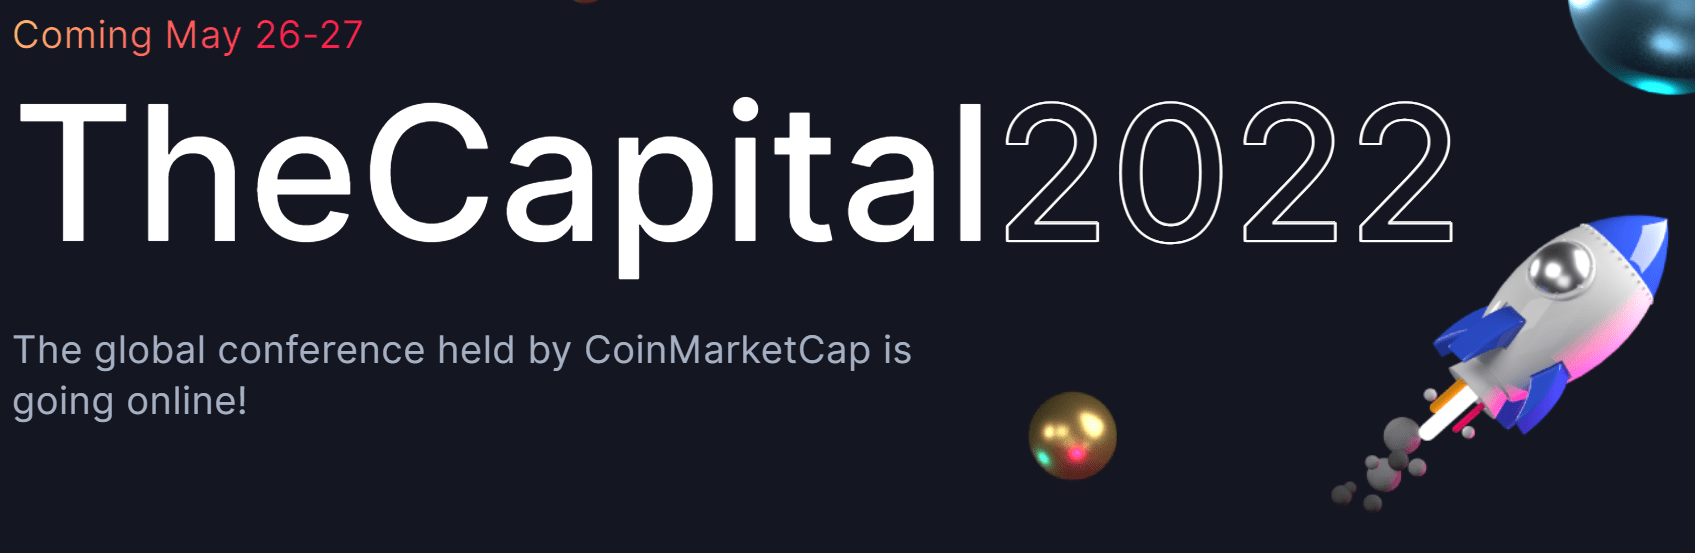 CoinMarketCap: The Capital